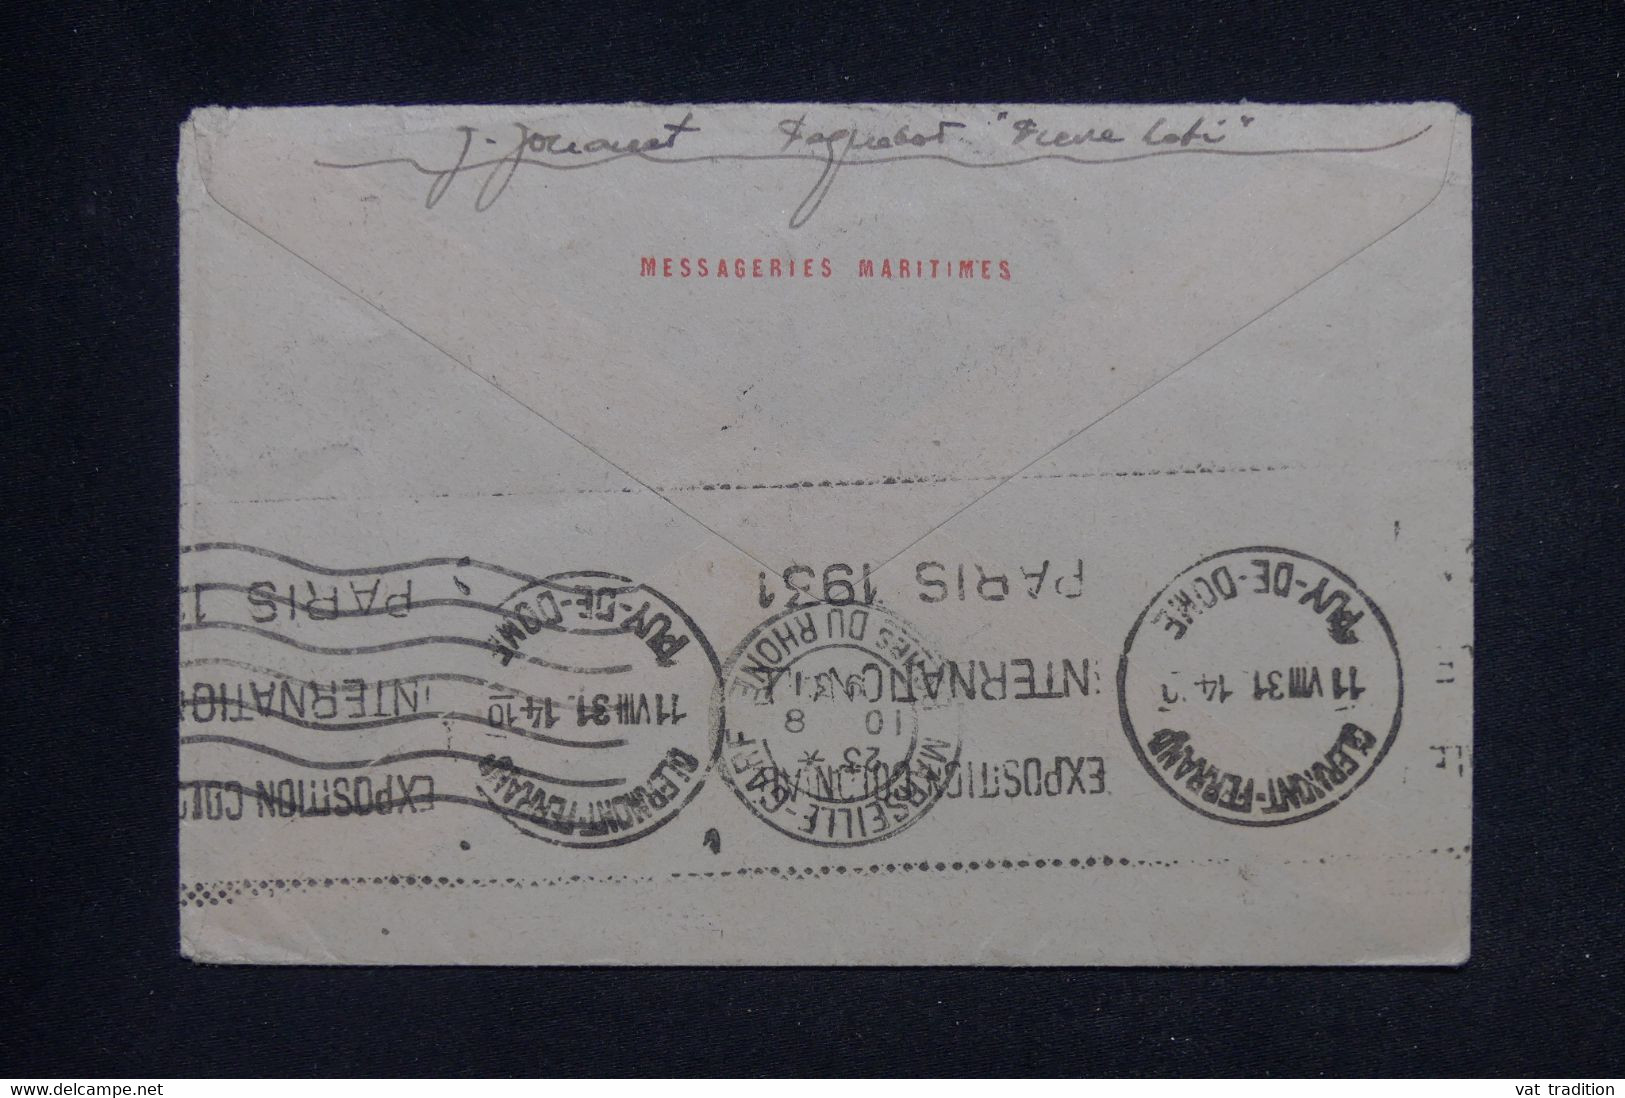 LIBAN - Enveloppe De Beyrouth Pour Clermont Ferrand Par Avion En 1931  - L 135965 - Lettres & Documents